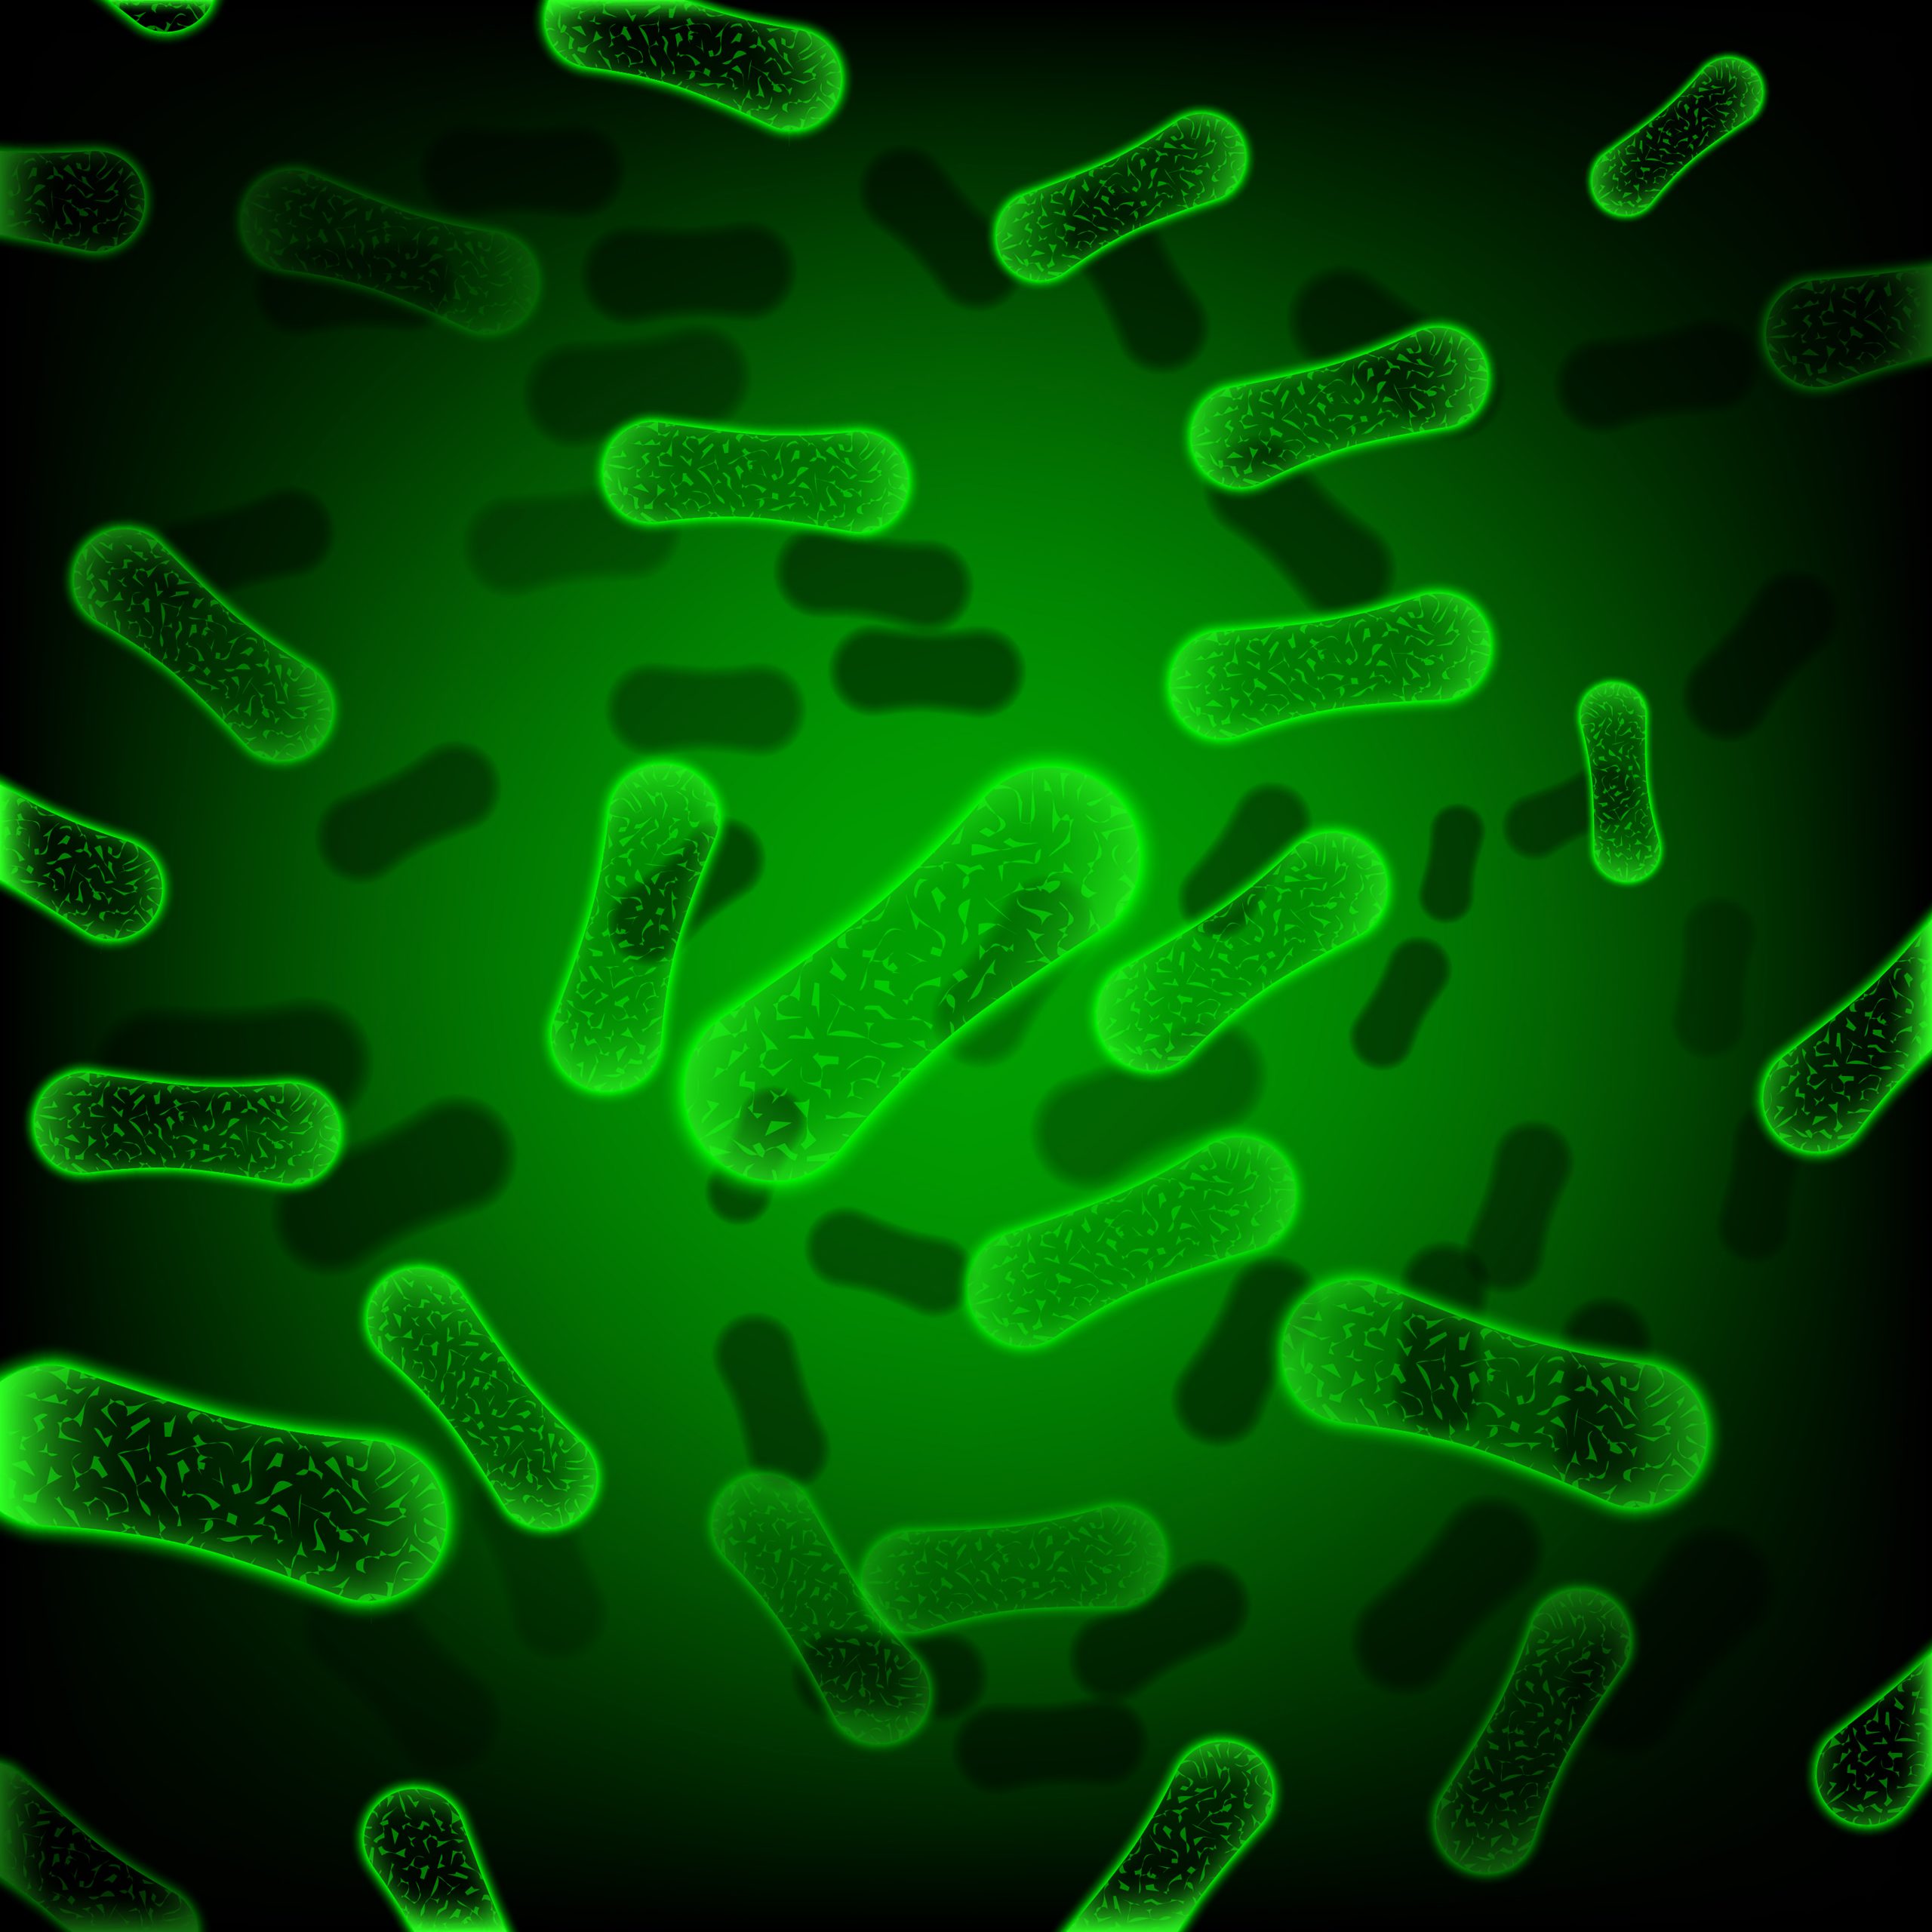 E.coli infections